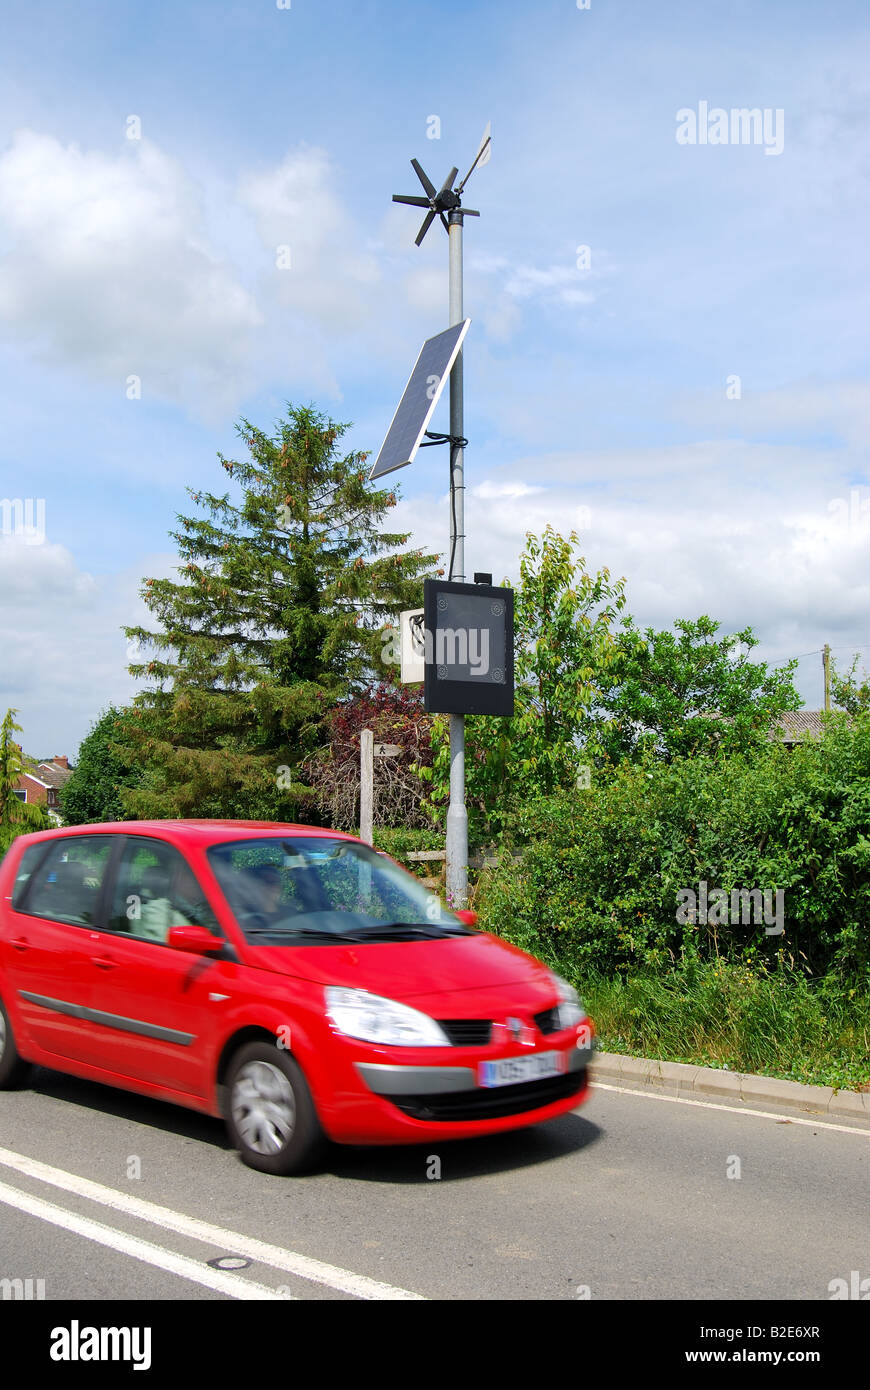 L'indicateur de vitesse routière avec turbine éolienne et panneau solaire, A46 road, Warwickshire, Angleterre, Royaume-Uni Banque D'Images